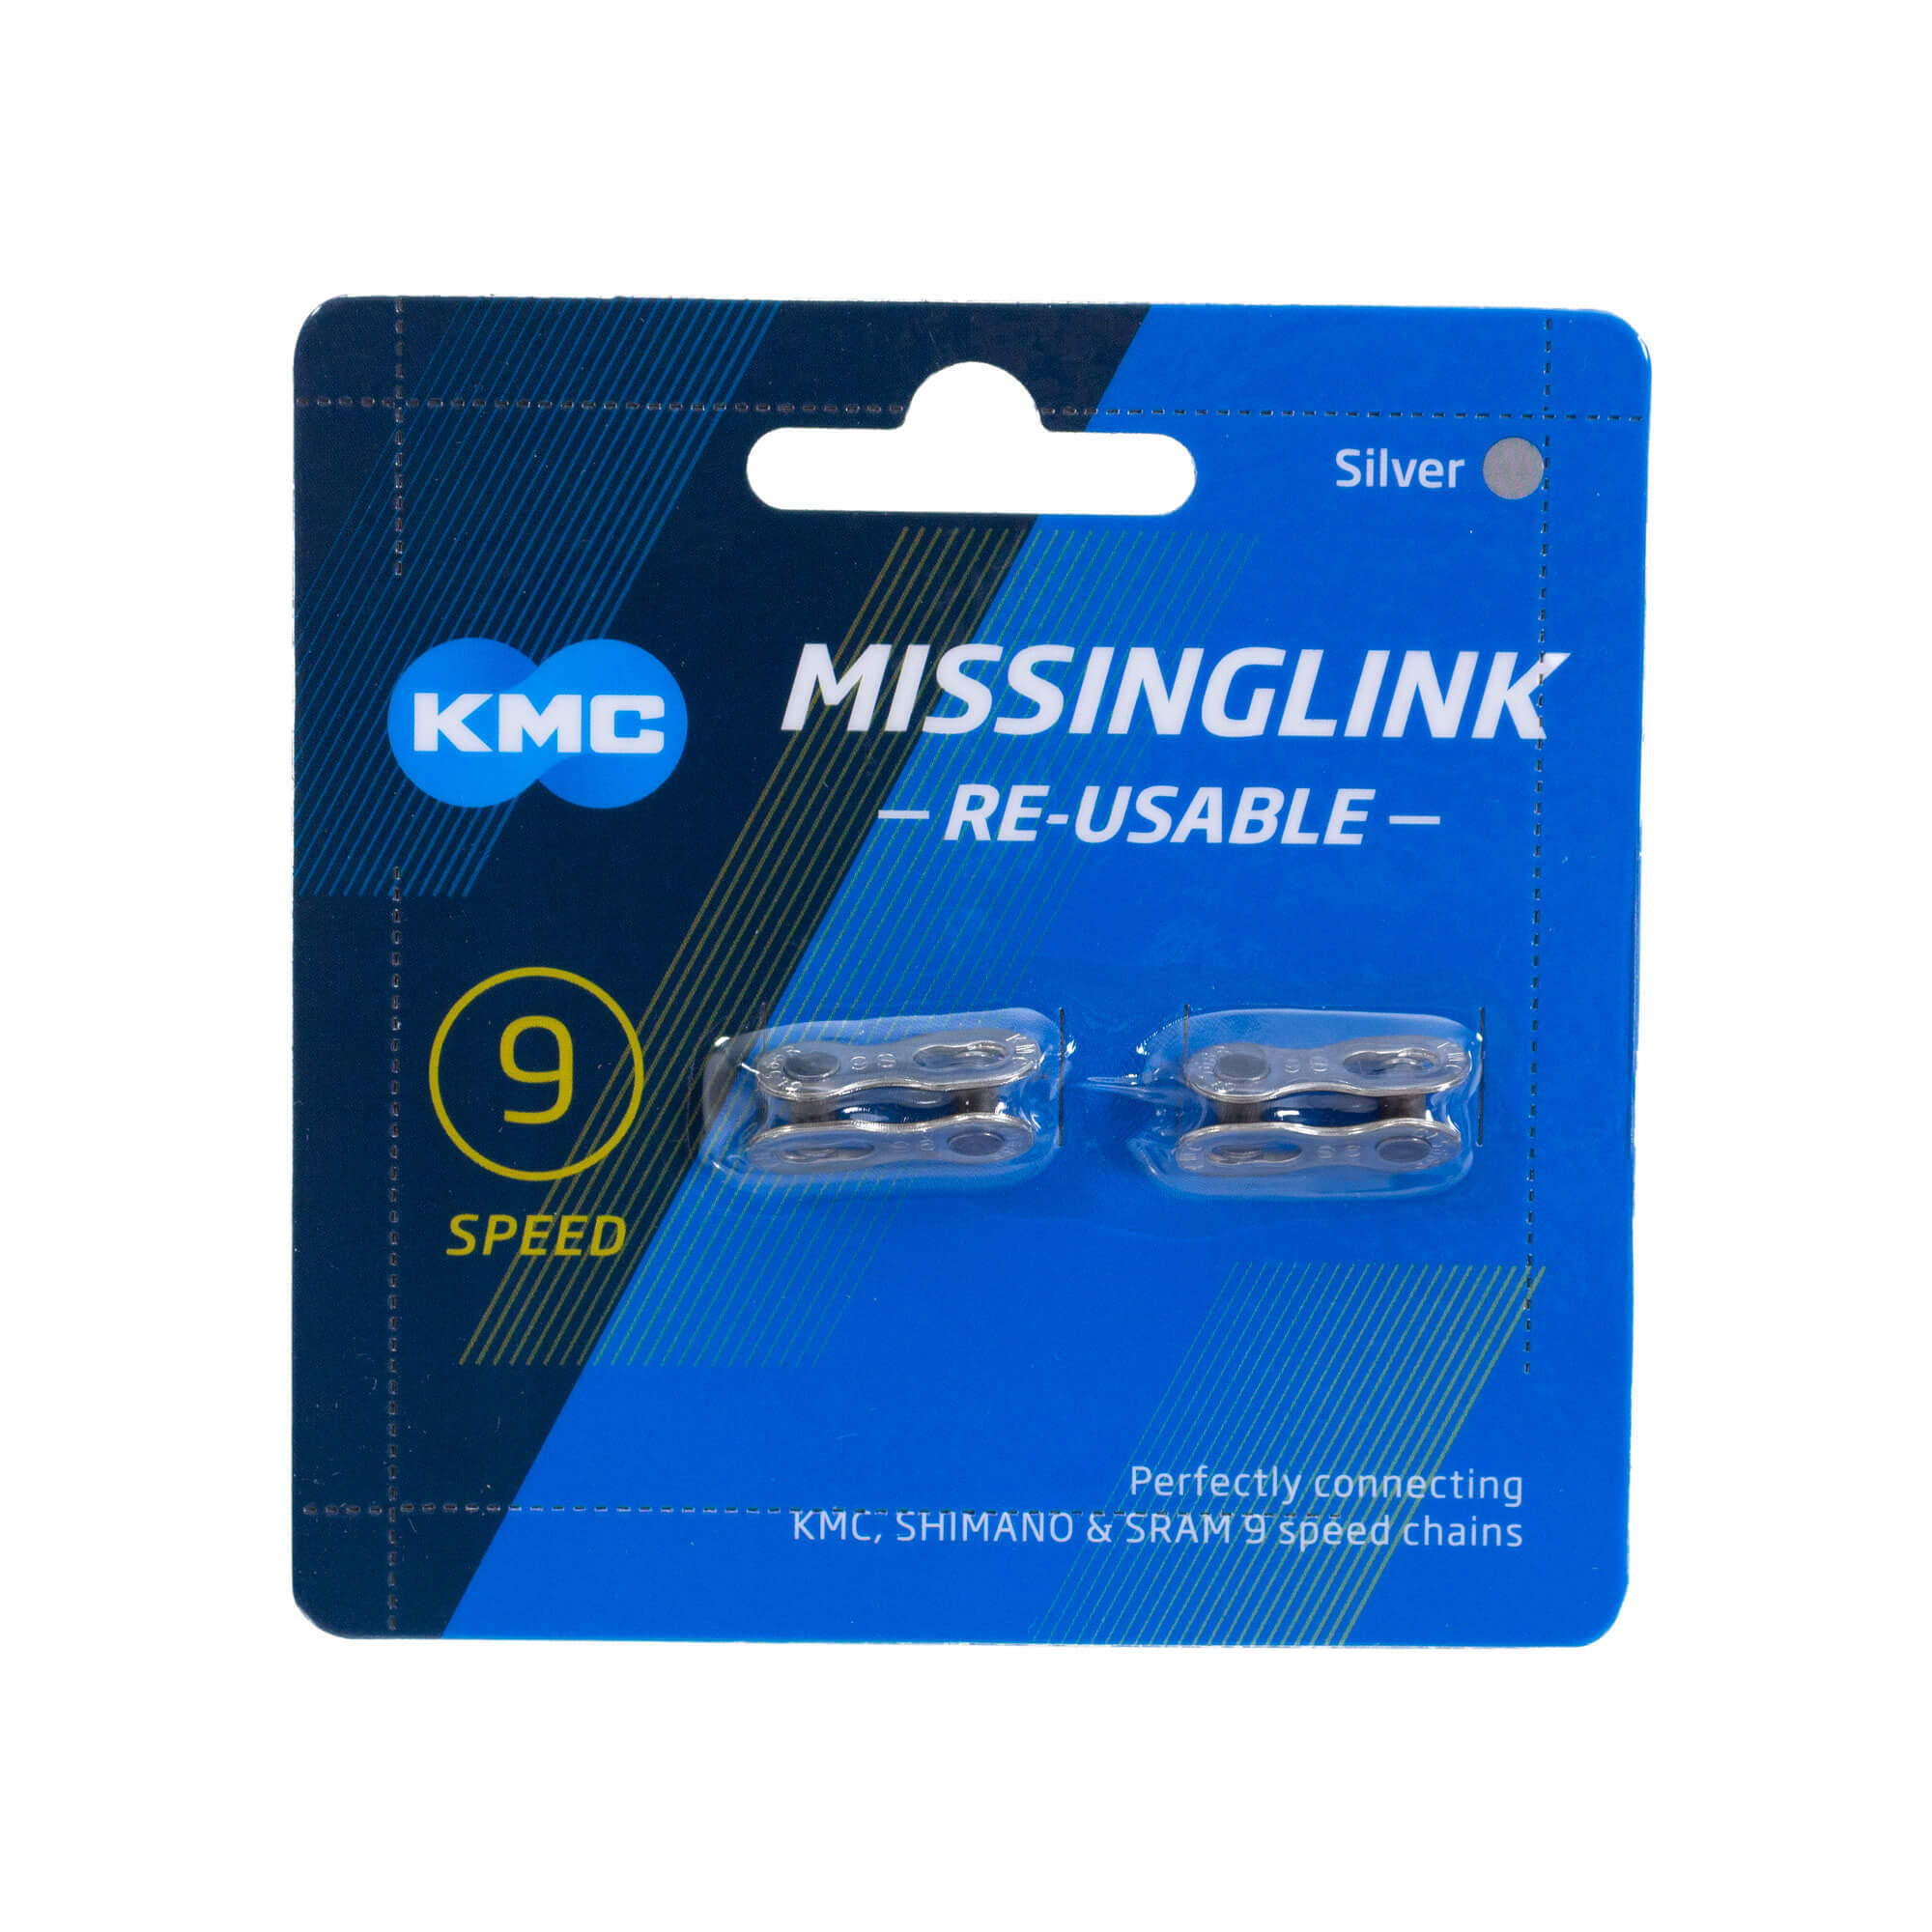 Missing Link 9 v. – KMC (Power link)